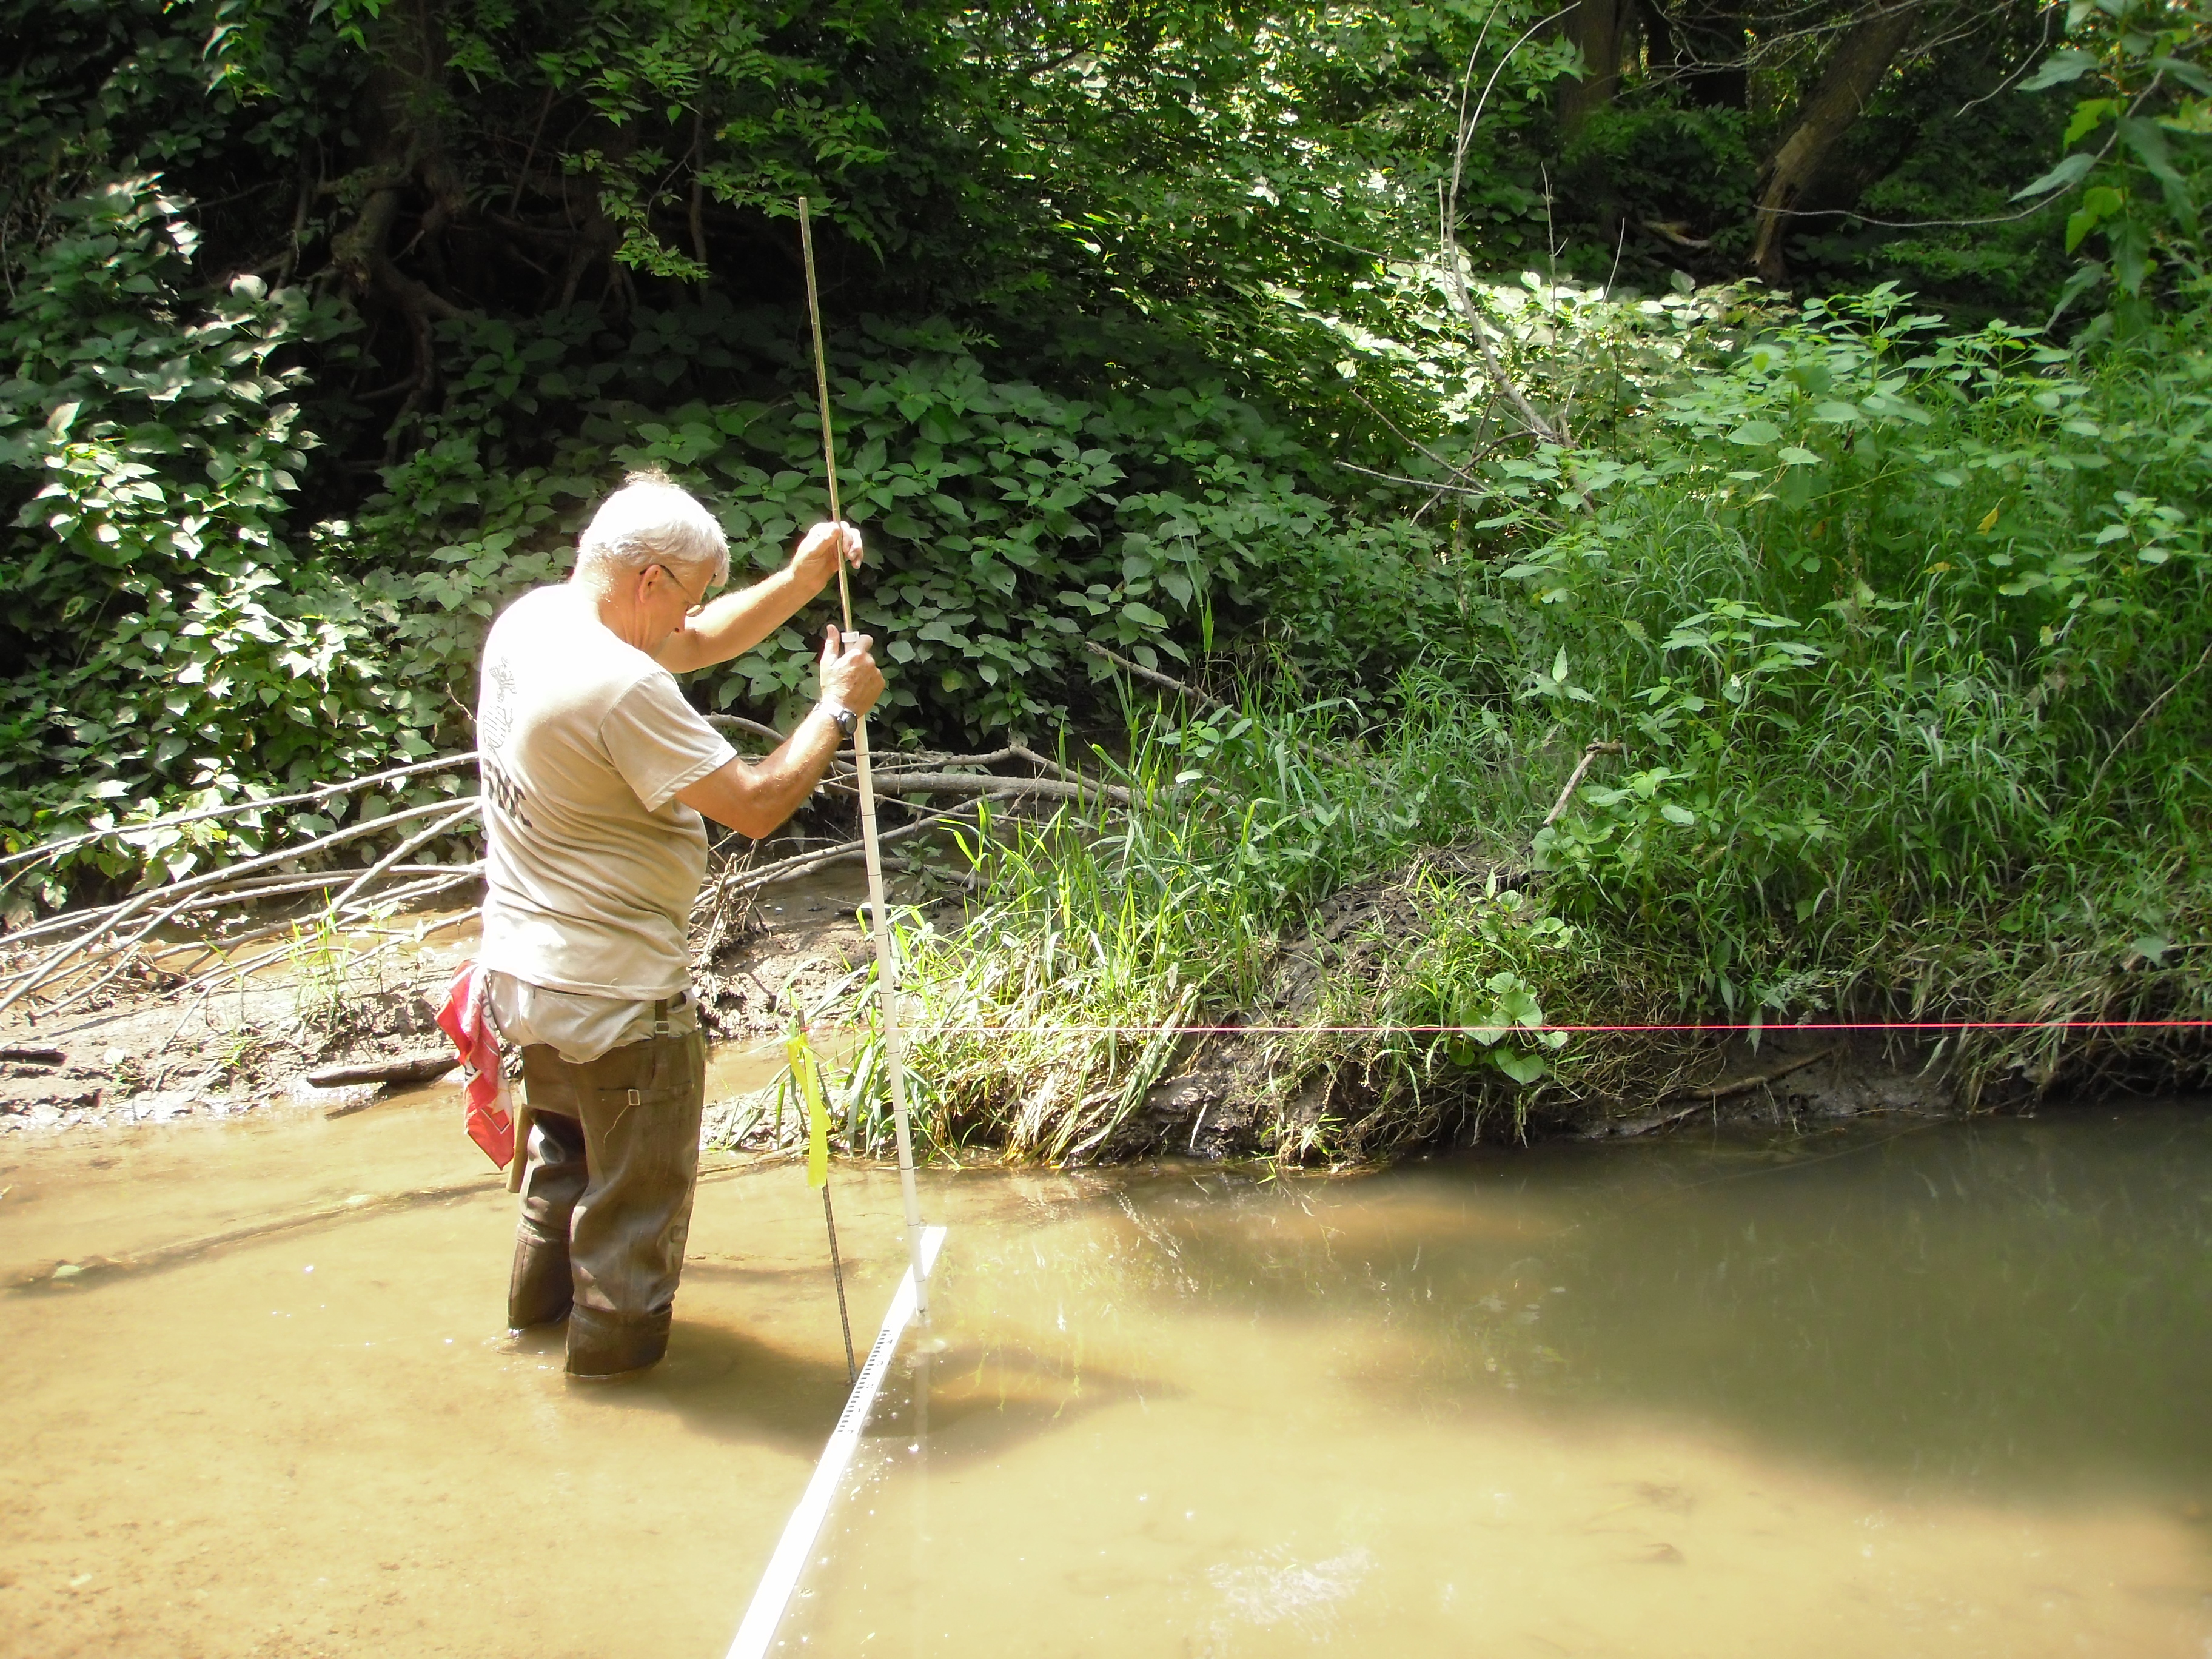 Measuring sediment depth on Banner Creek, July 2010.